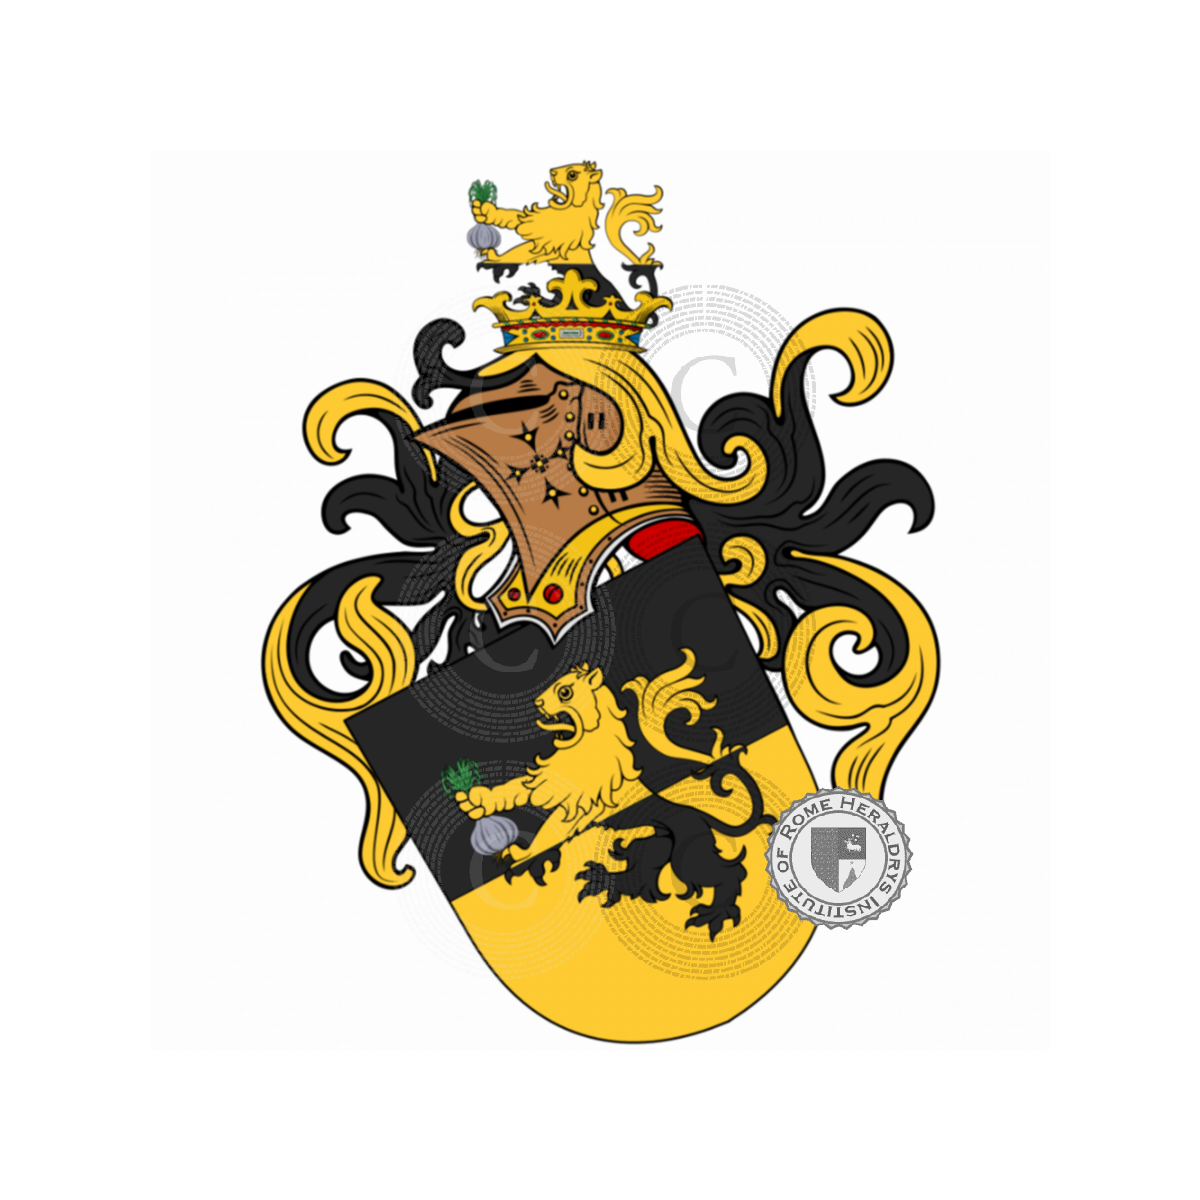 Wappen der FamilieKnobloch, Chnobolohe,Knoblauch,Knoblich,von Droste